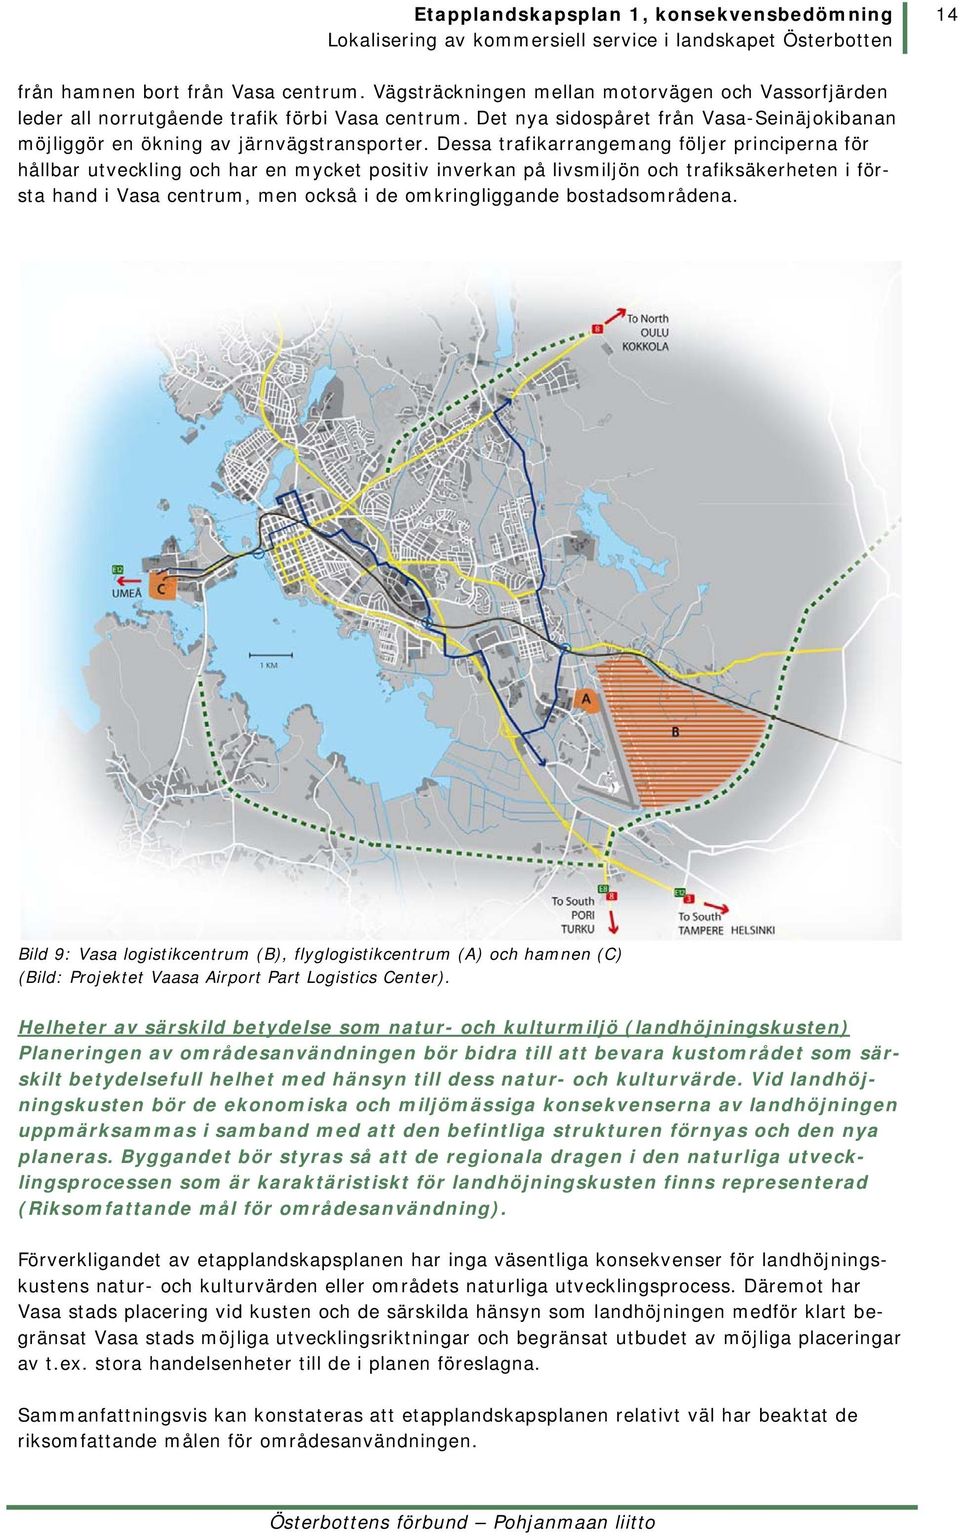 Dessa trafikarrangemang följer principerna för hållbar utveckling och har en mycket positiv inverkan på livsmiljön och trafiksäkerheten i första hand i Vasa centrum, men också i de omkringliggande